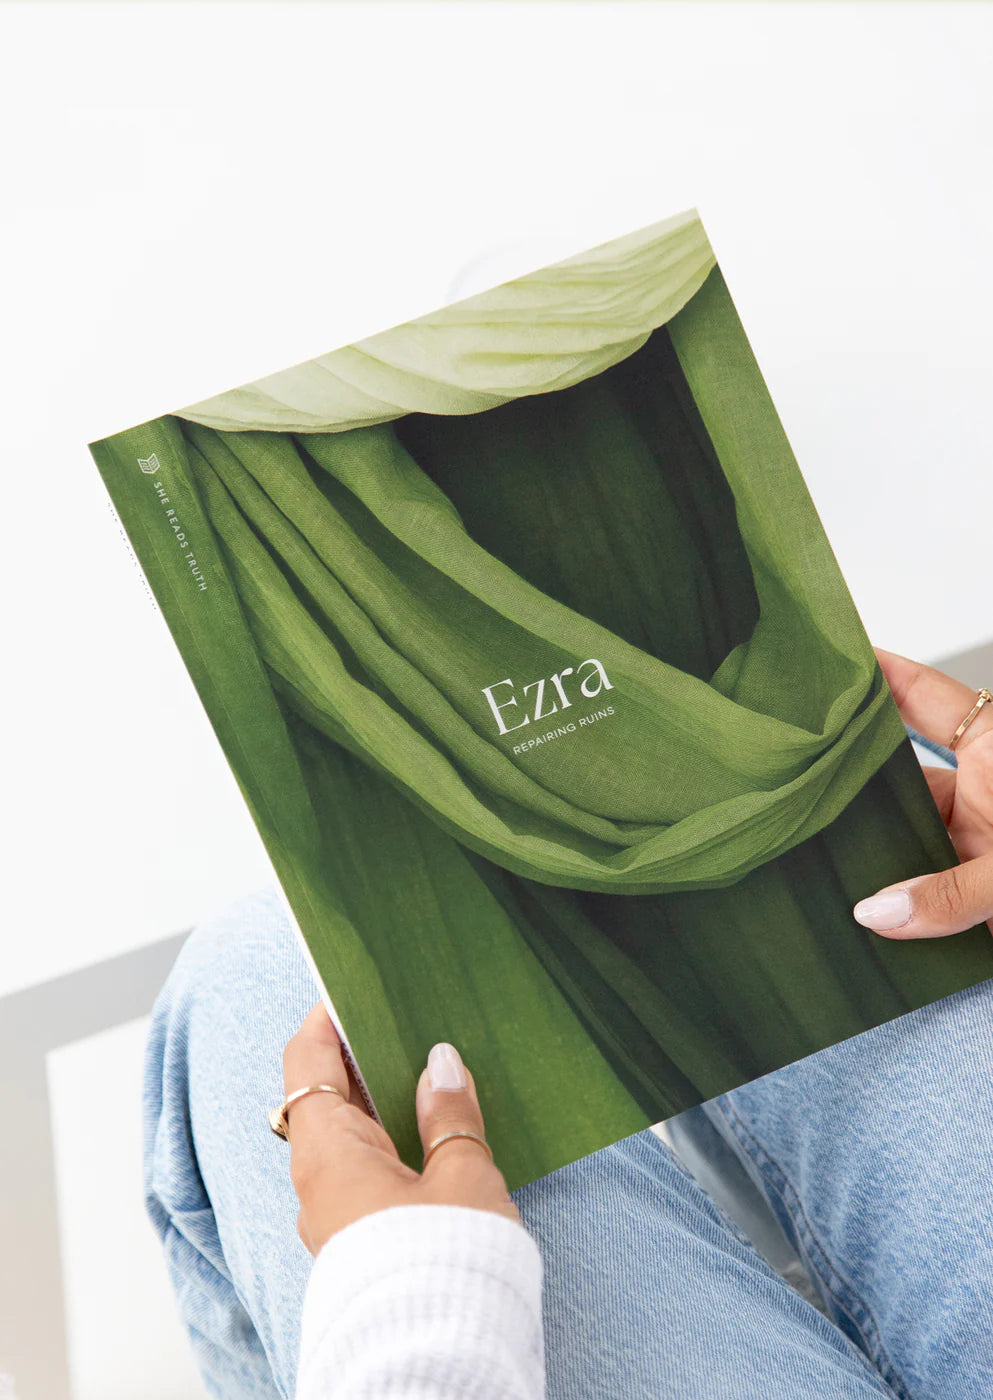 'Ezra: Repairing Ruins' Study Book